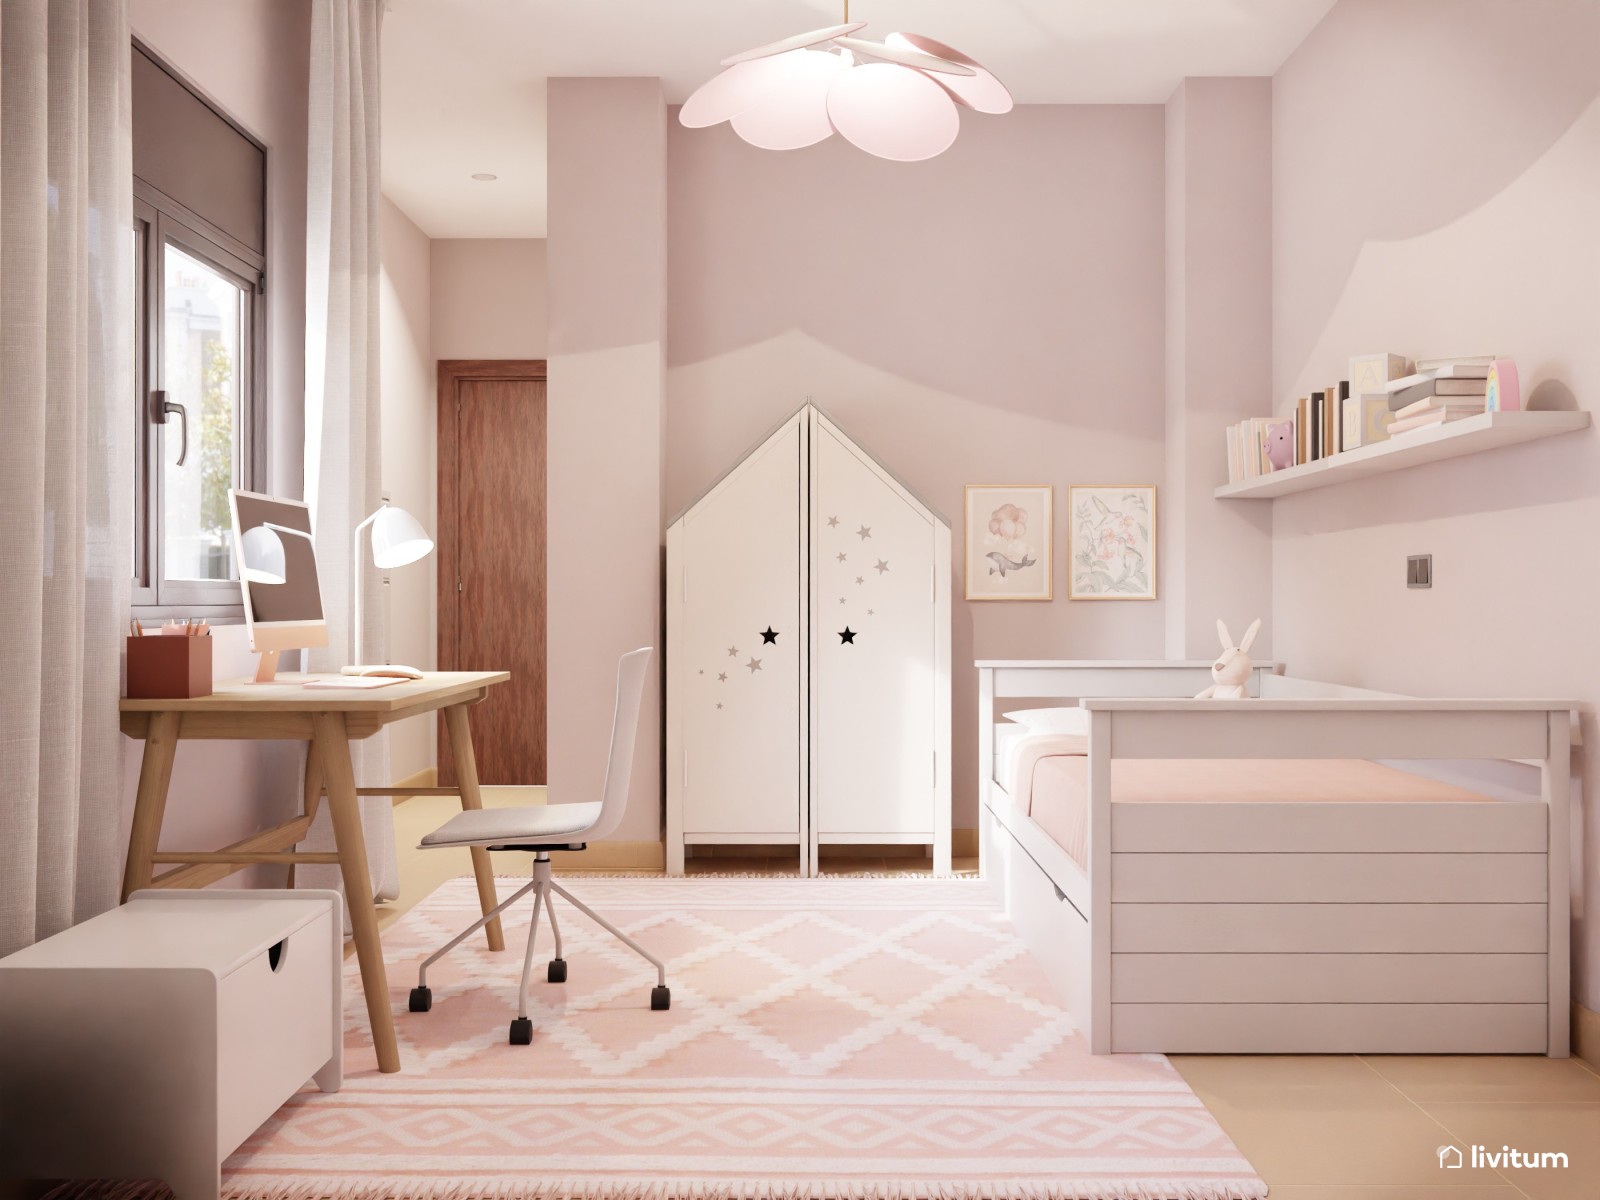 Habitación infantil para niñas de estilo clásico en colores rosa claro y  muebles blancos. representación 3d.